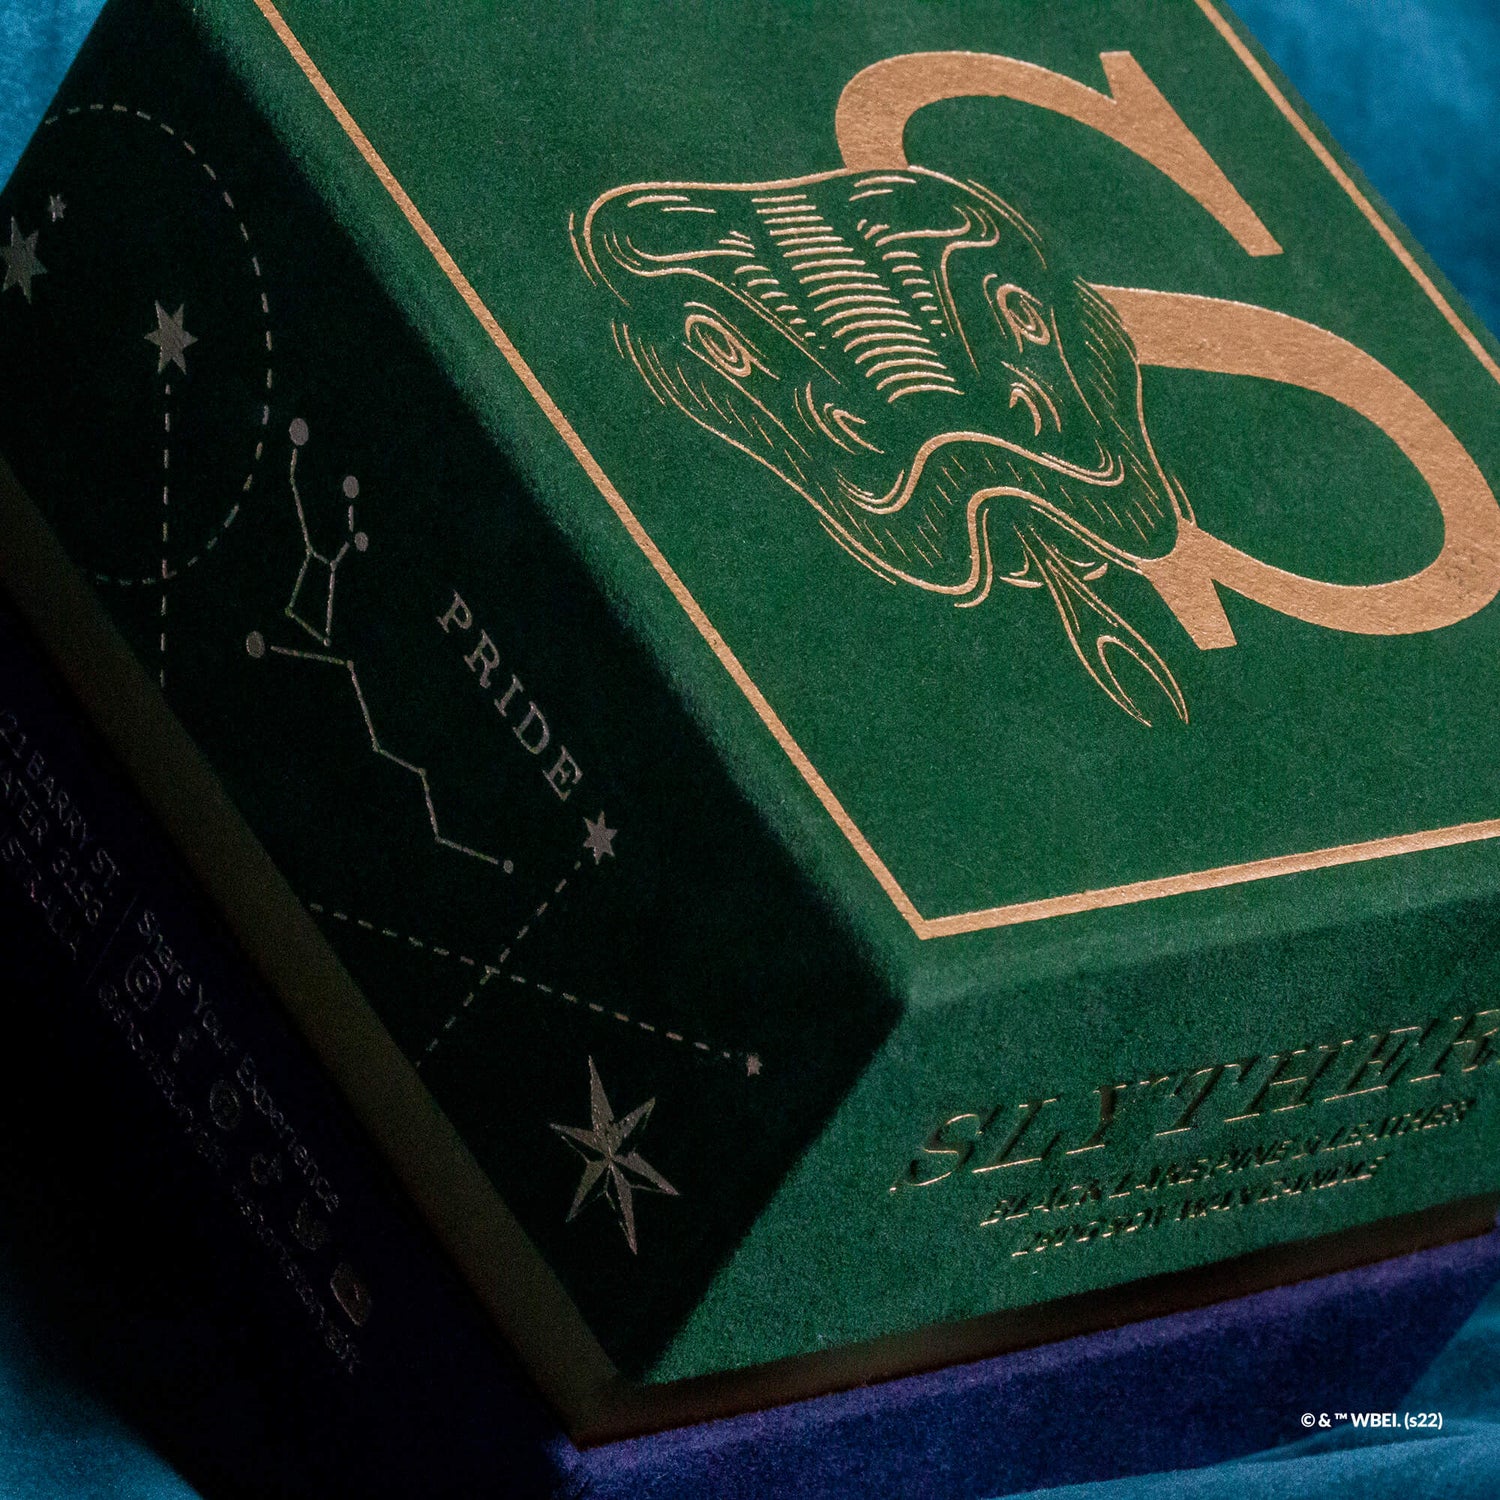 Slytherin Mystery Box Harry Potter - Boutique Harry Potter